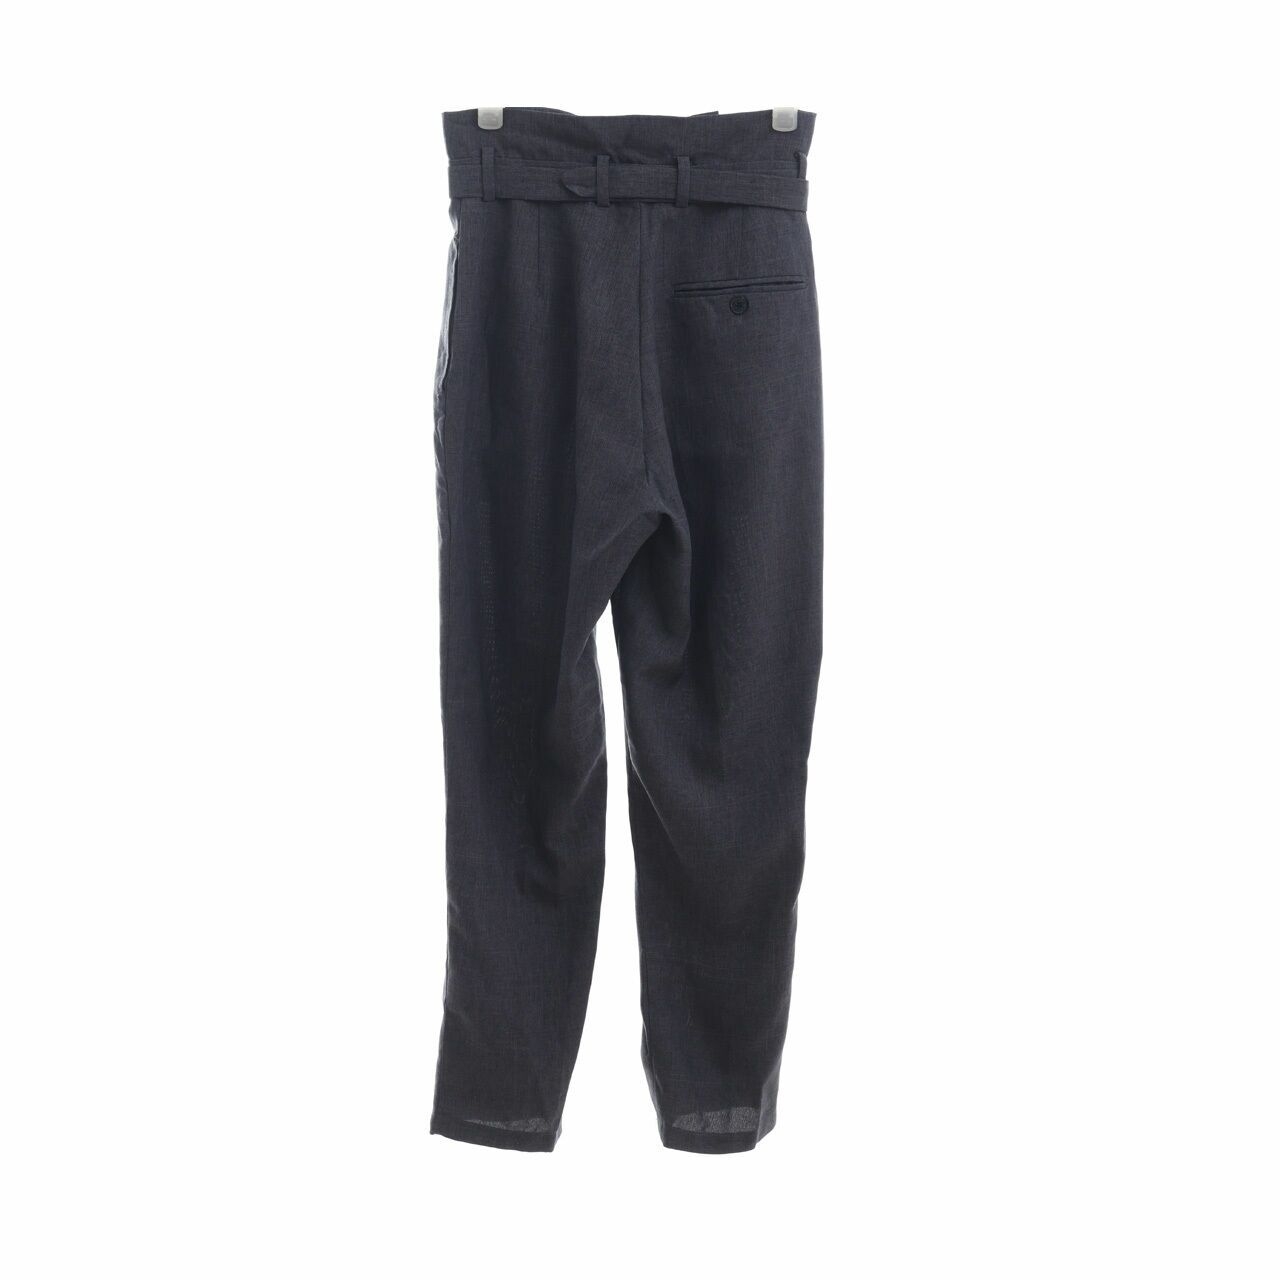 (X)SML Grey Long Pants